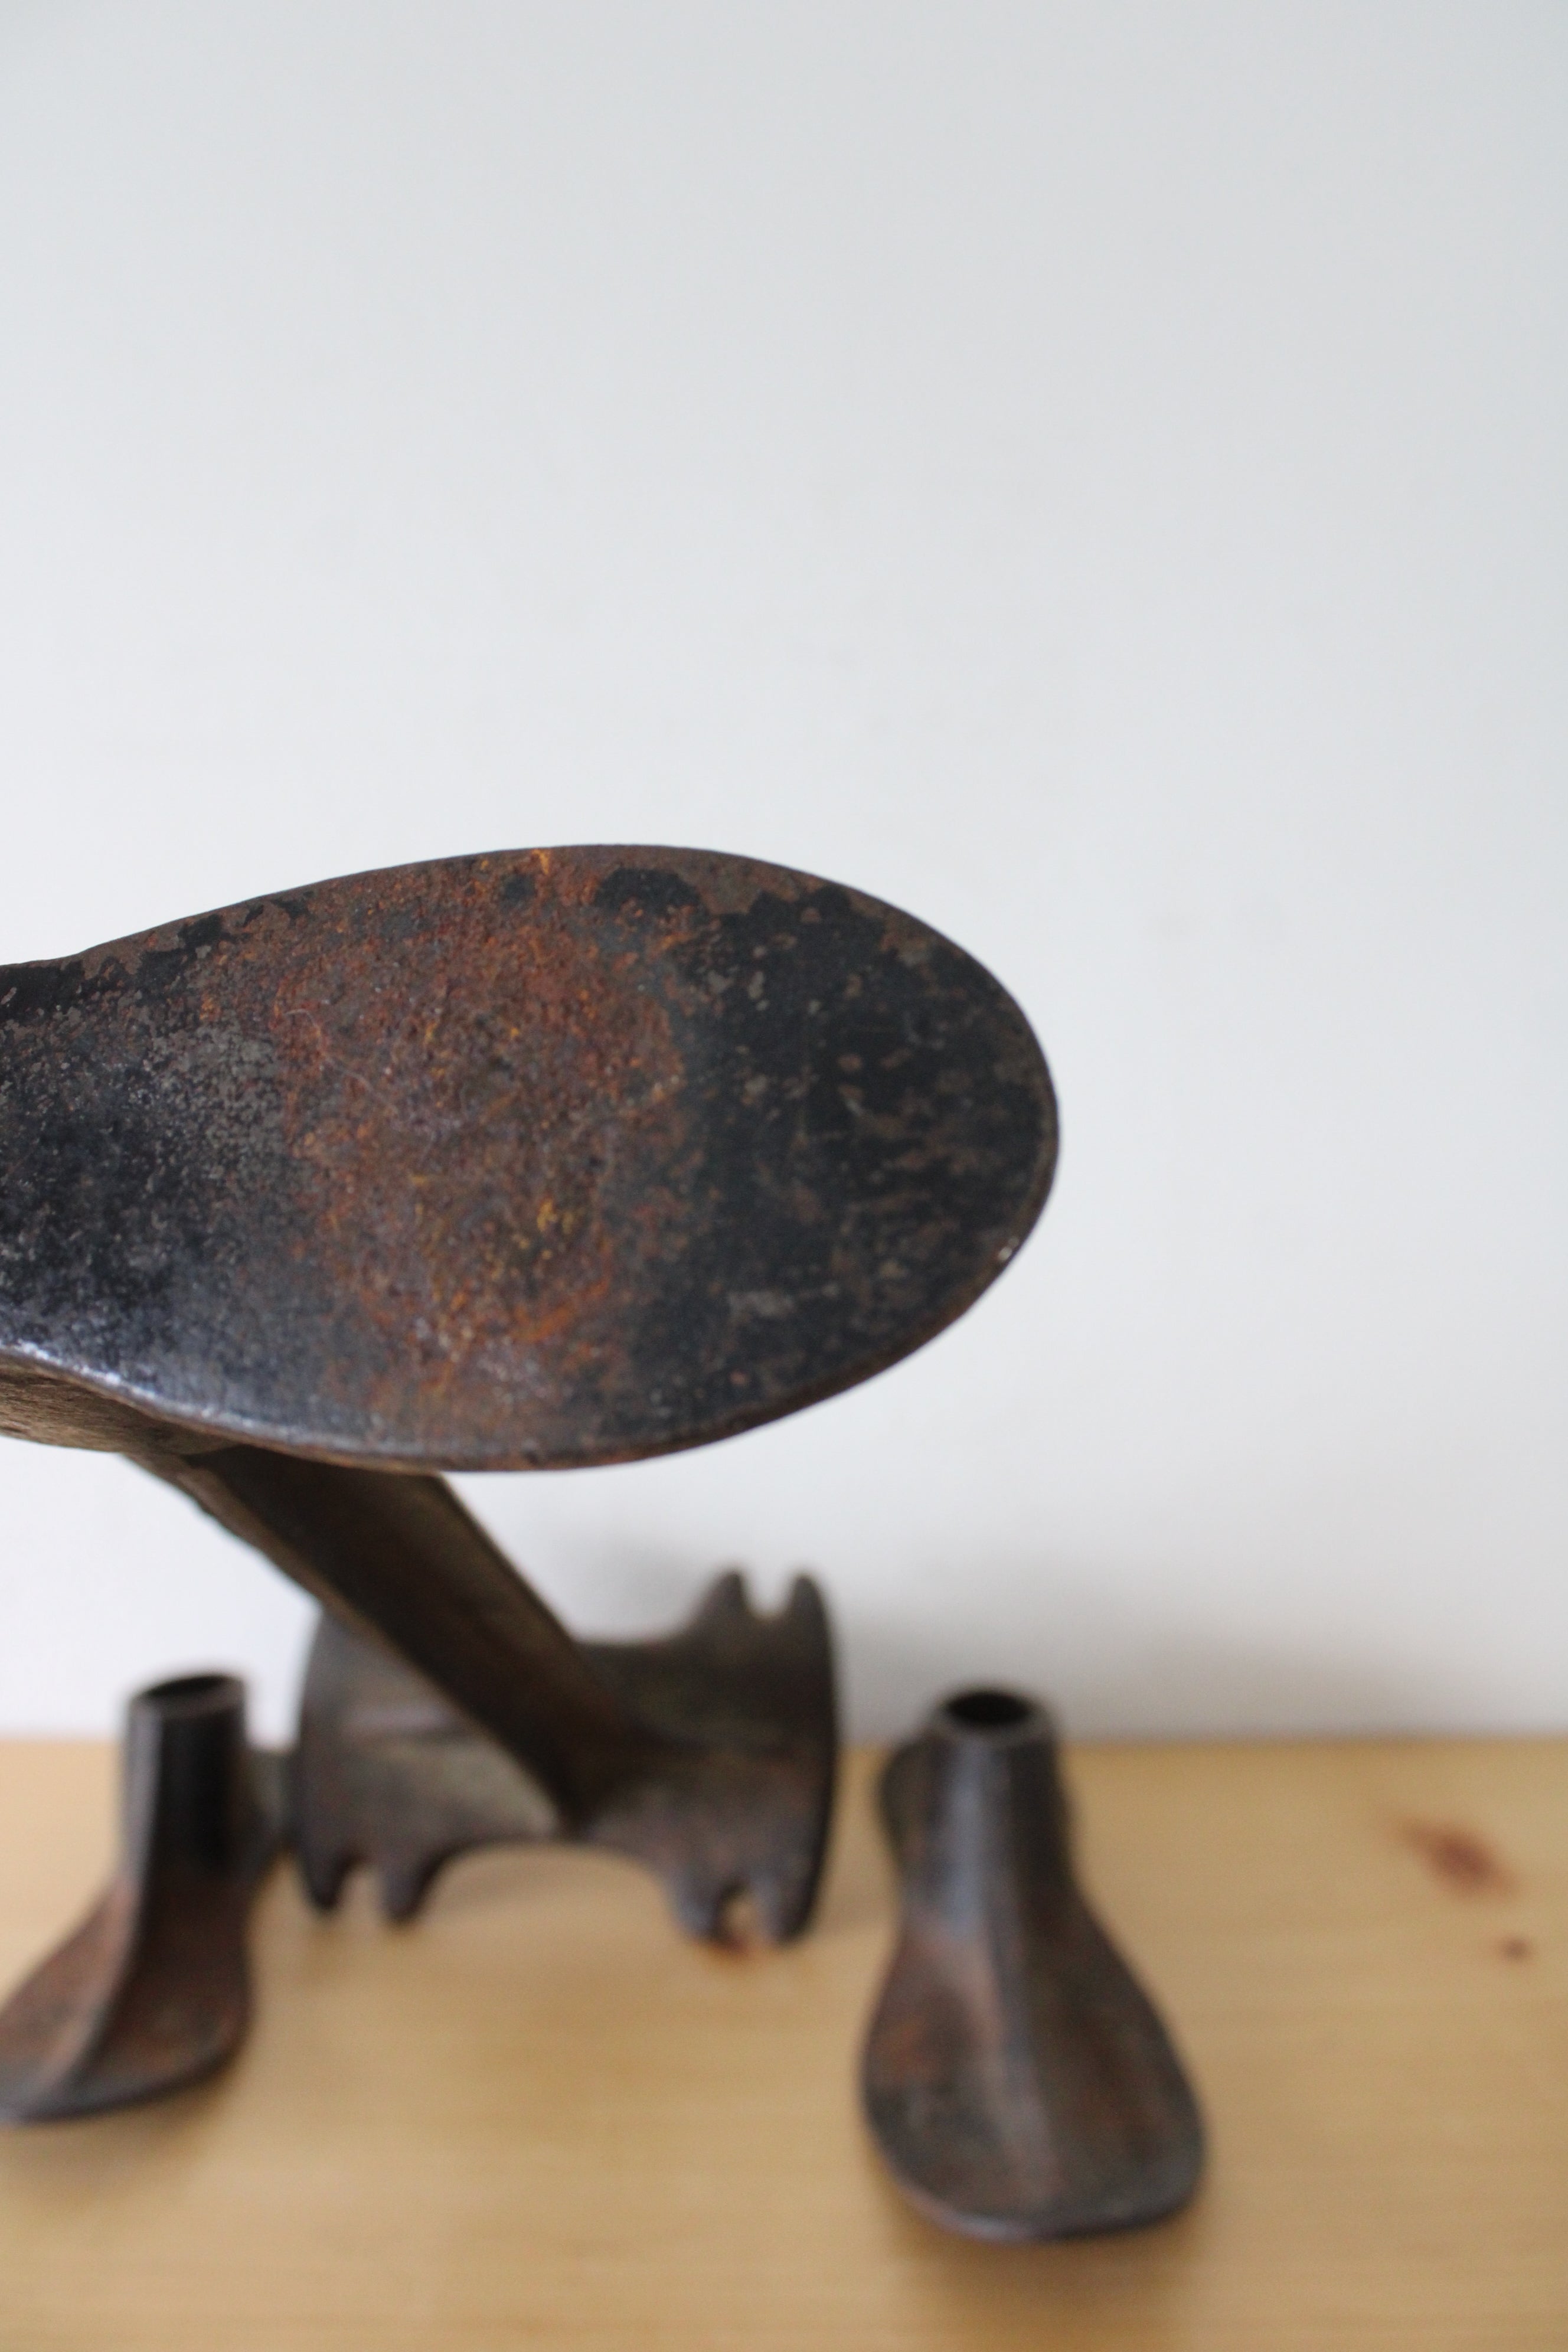 Antique Cast Iron Malleable Cobbler's Shoe 4 Piece Repair Stand